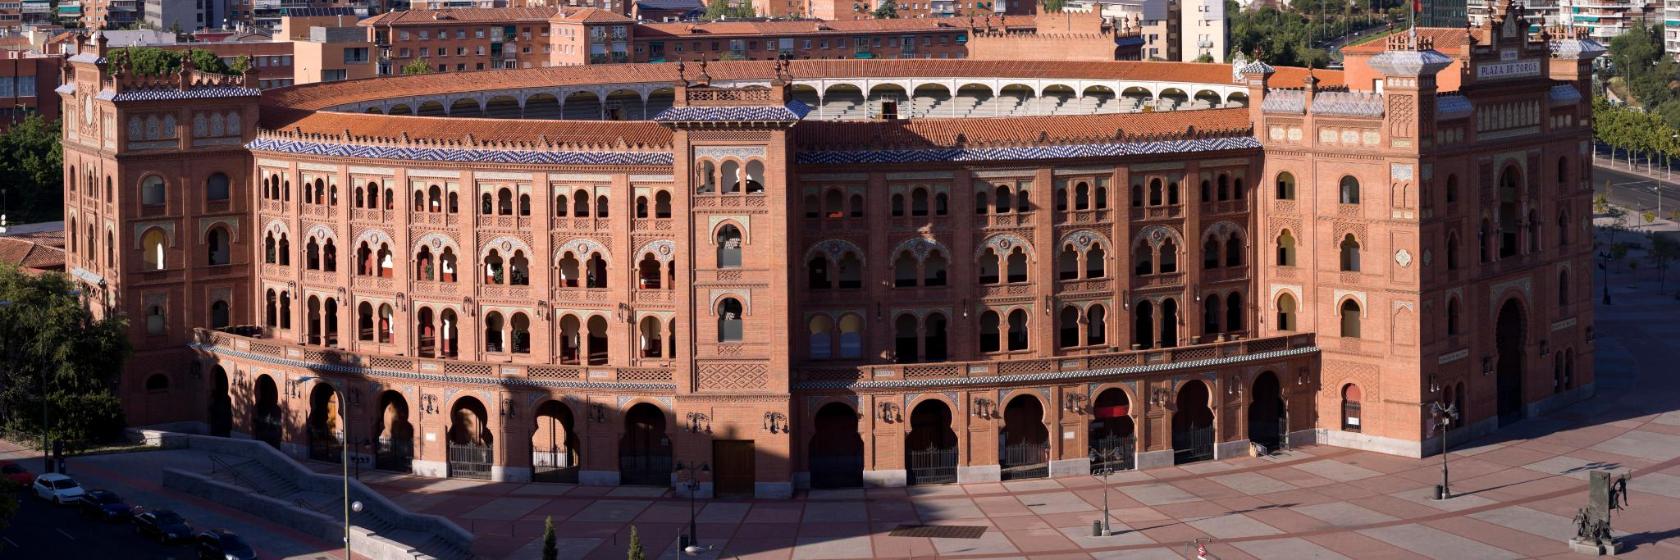 Los 10 mejores hoteles cerca de: Plaza de toros de Las Ventas, Madrid,  España